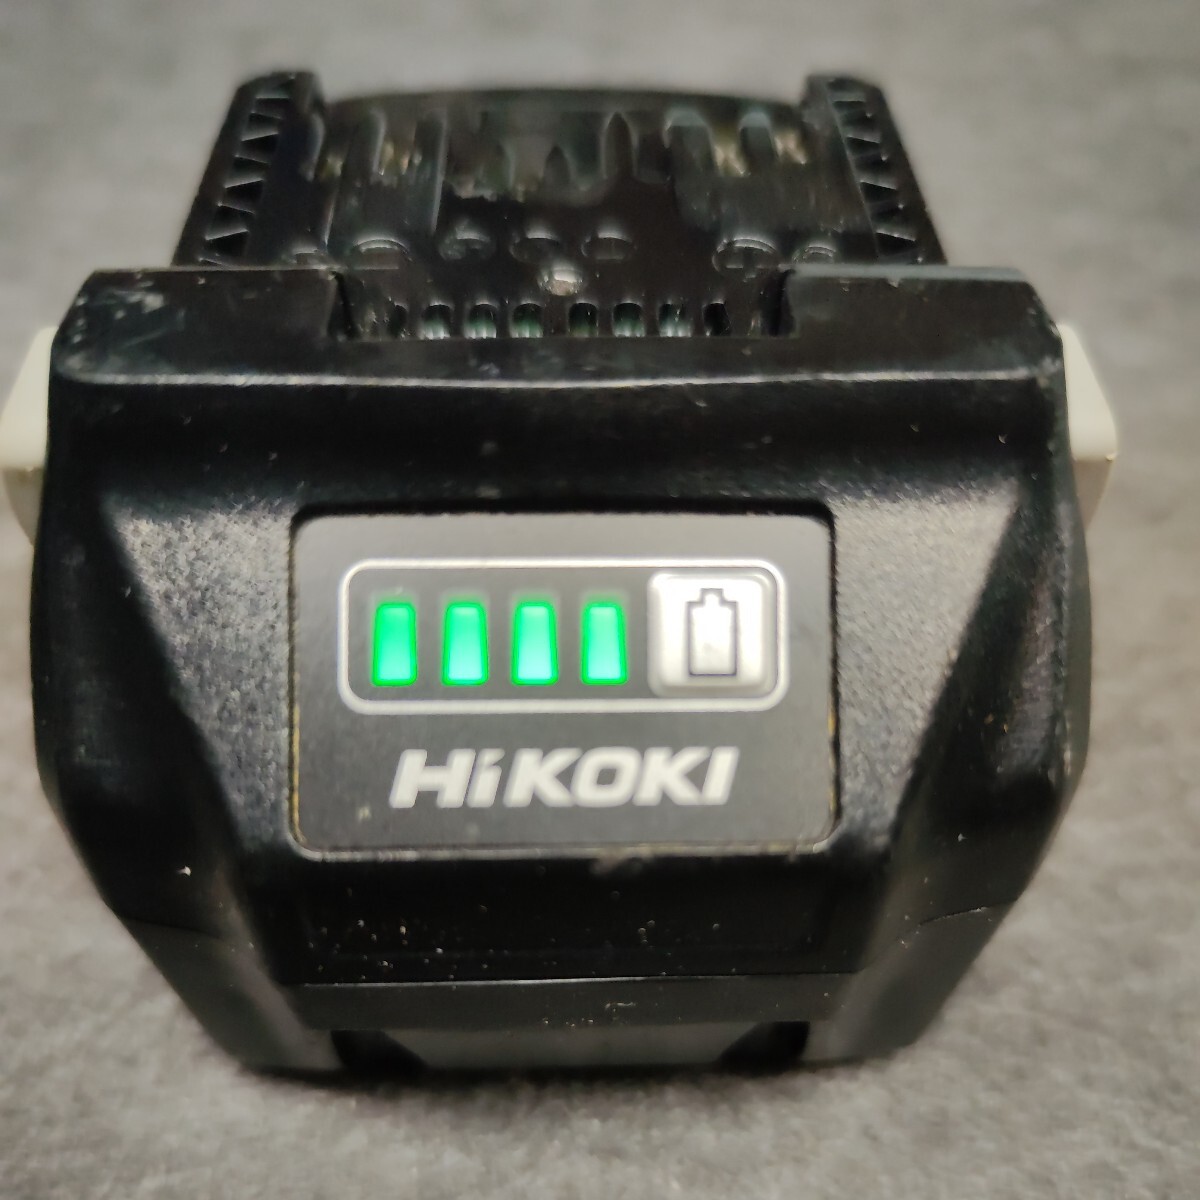 HiKOKI 急速充電器 uc18ydl2 新品未使用 マルチボルトBSL36a18付きの画像4